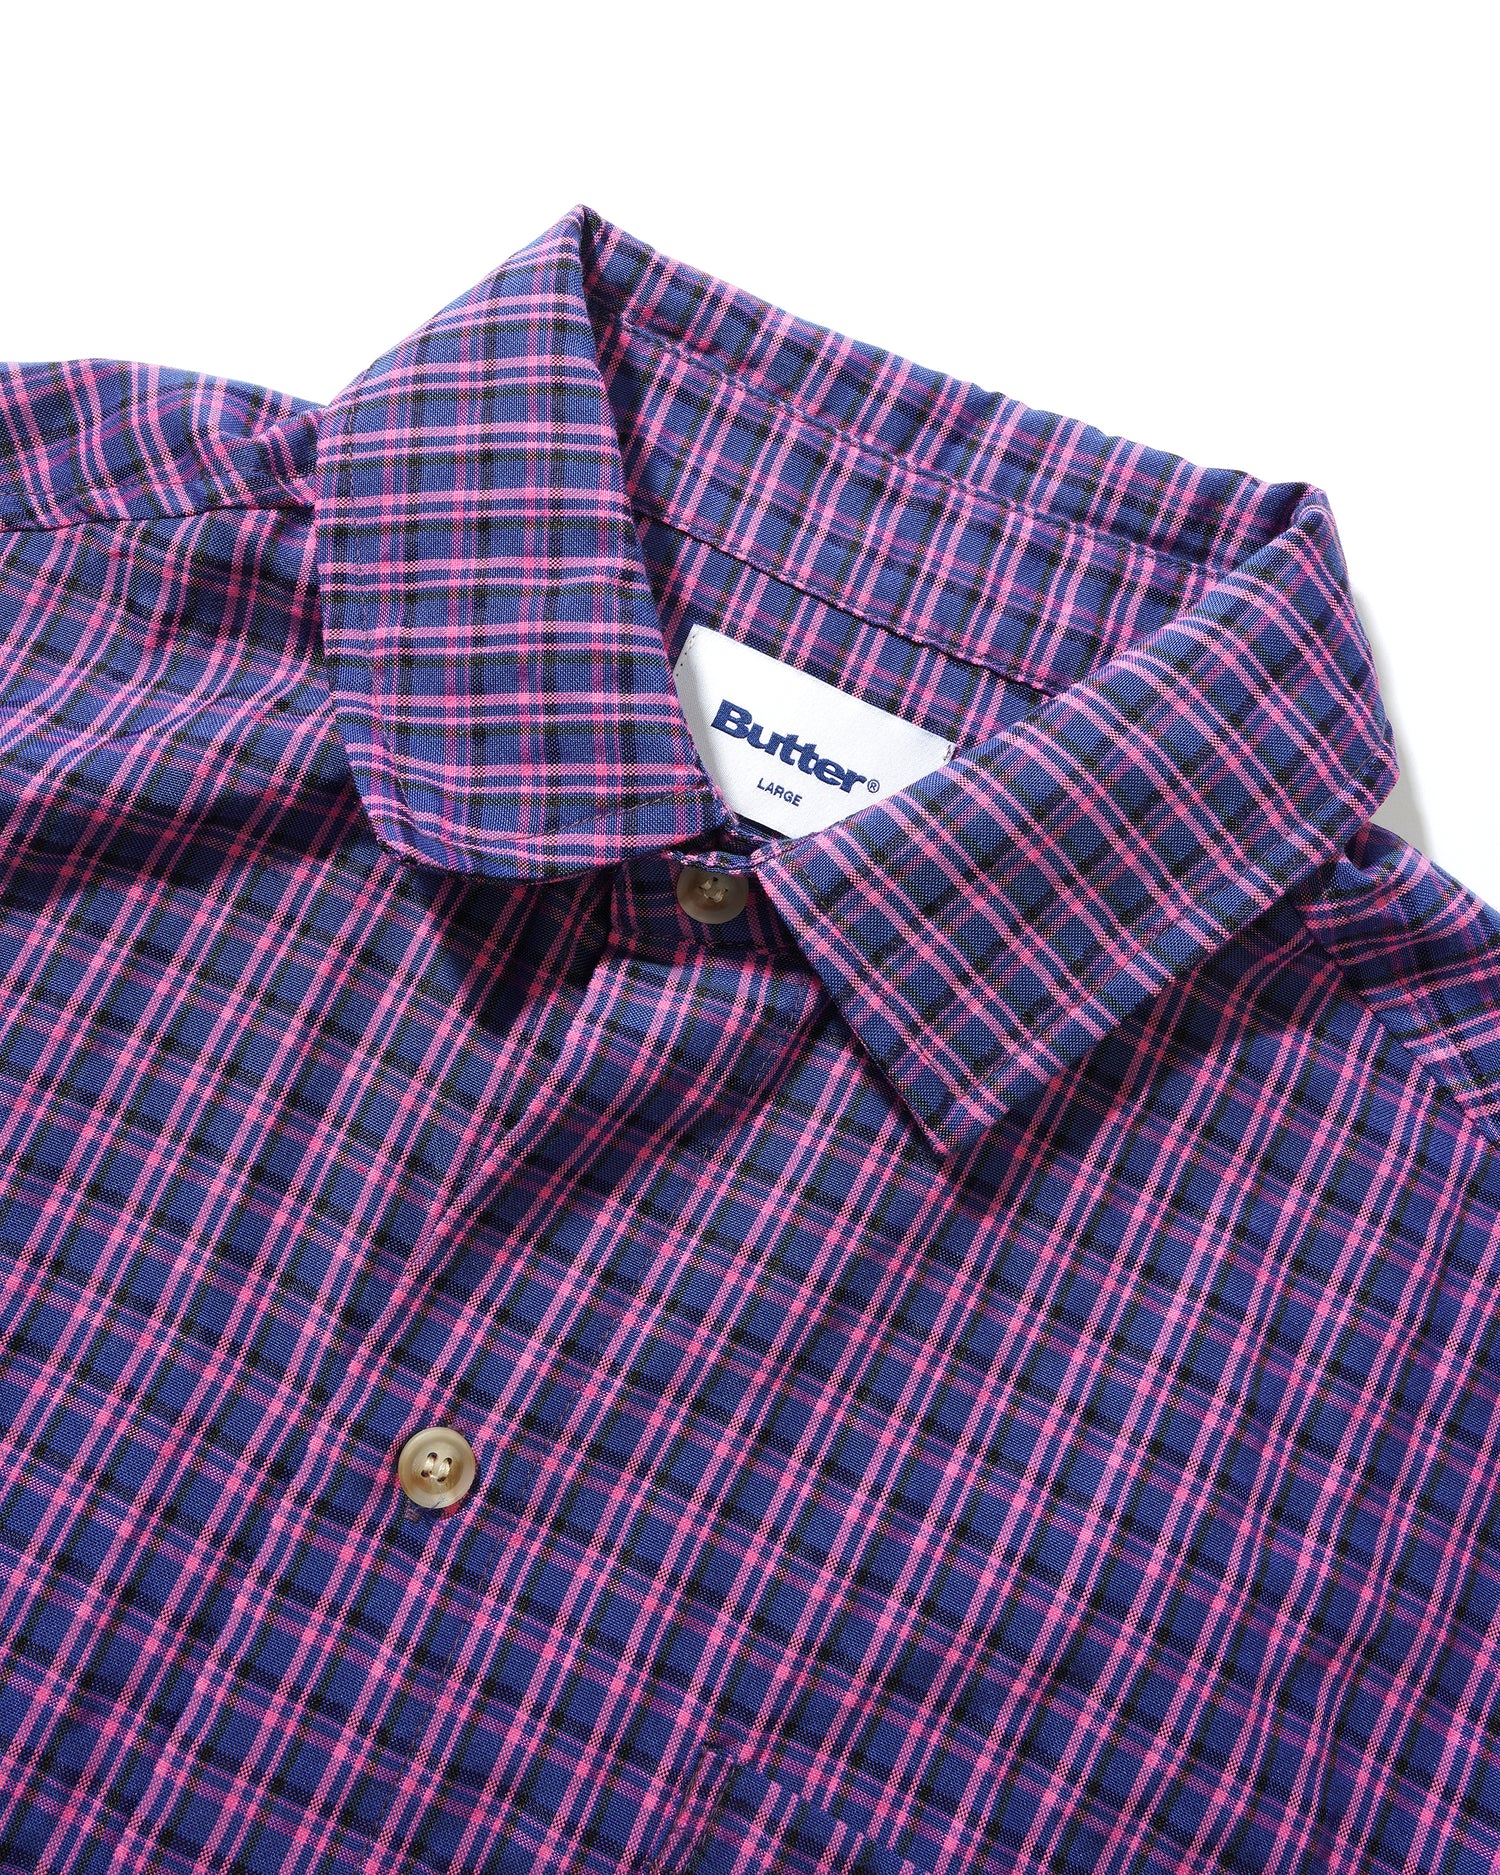 Terrain S/S Shirt, Navy / Pink